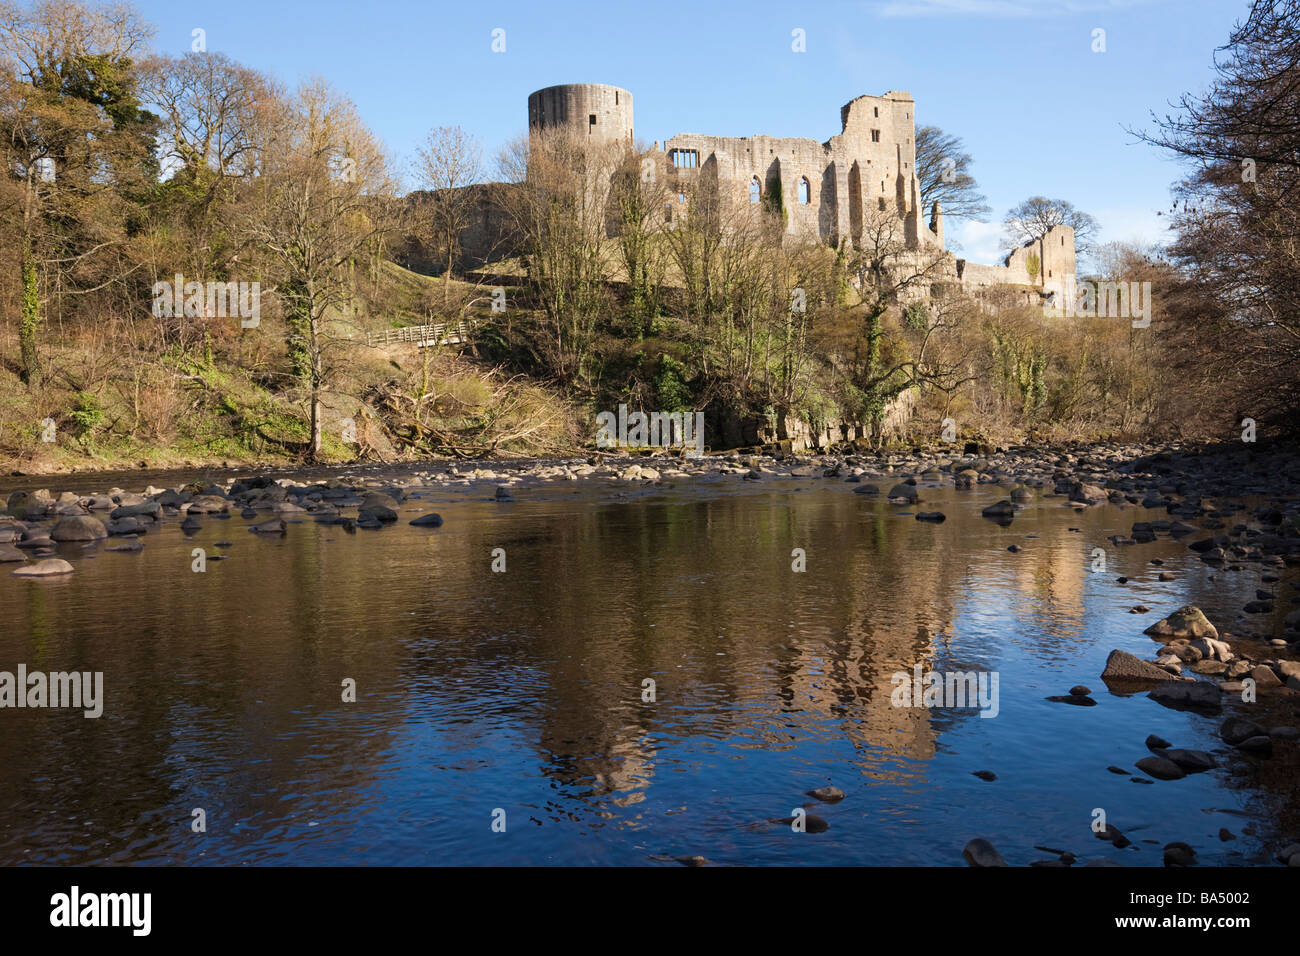 Les ruines du château se reflètent dans la rivière Tees. Château de Barnard, Teesdale, Durham, Angleterre, Royaume-Uni, Grande-Bretagne Banque D'Images